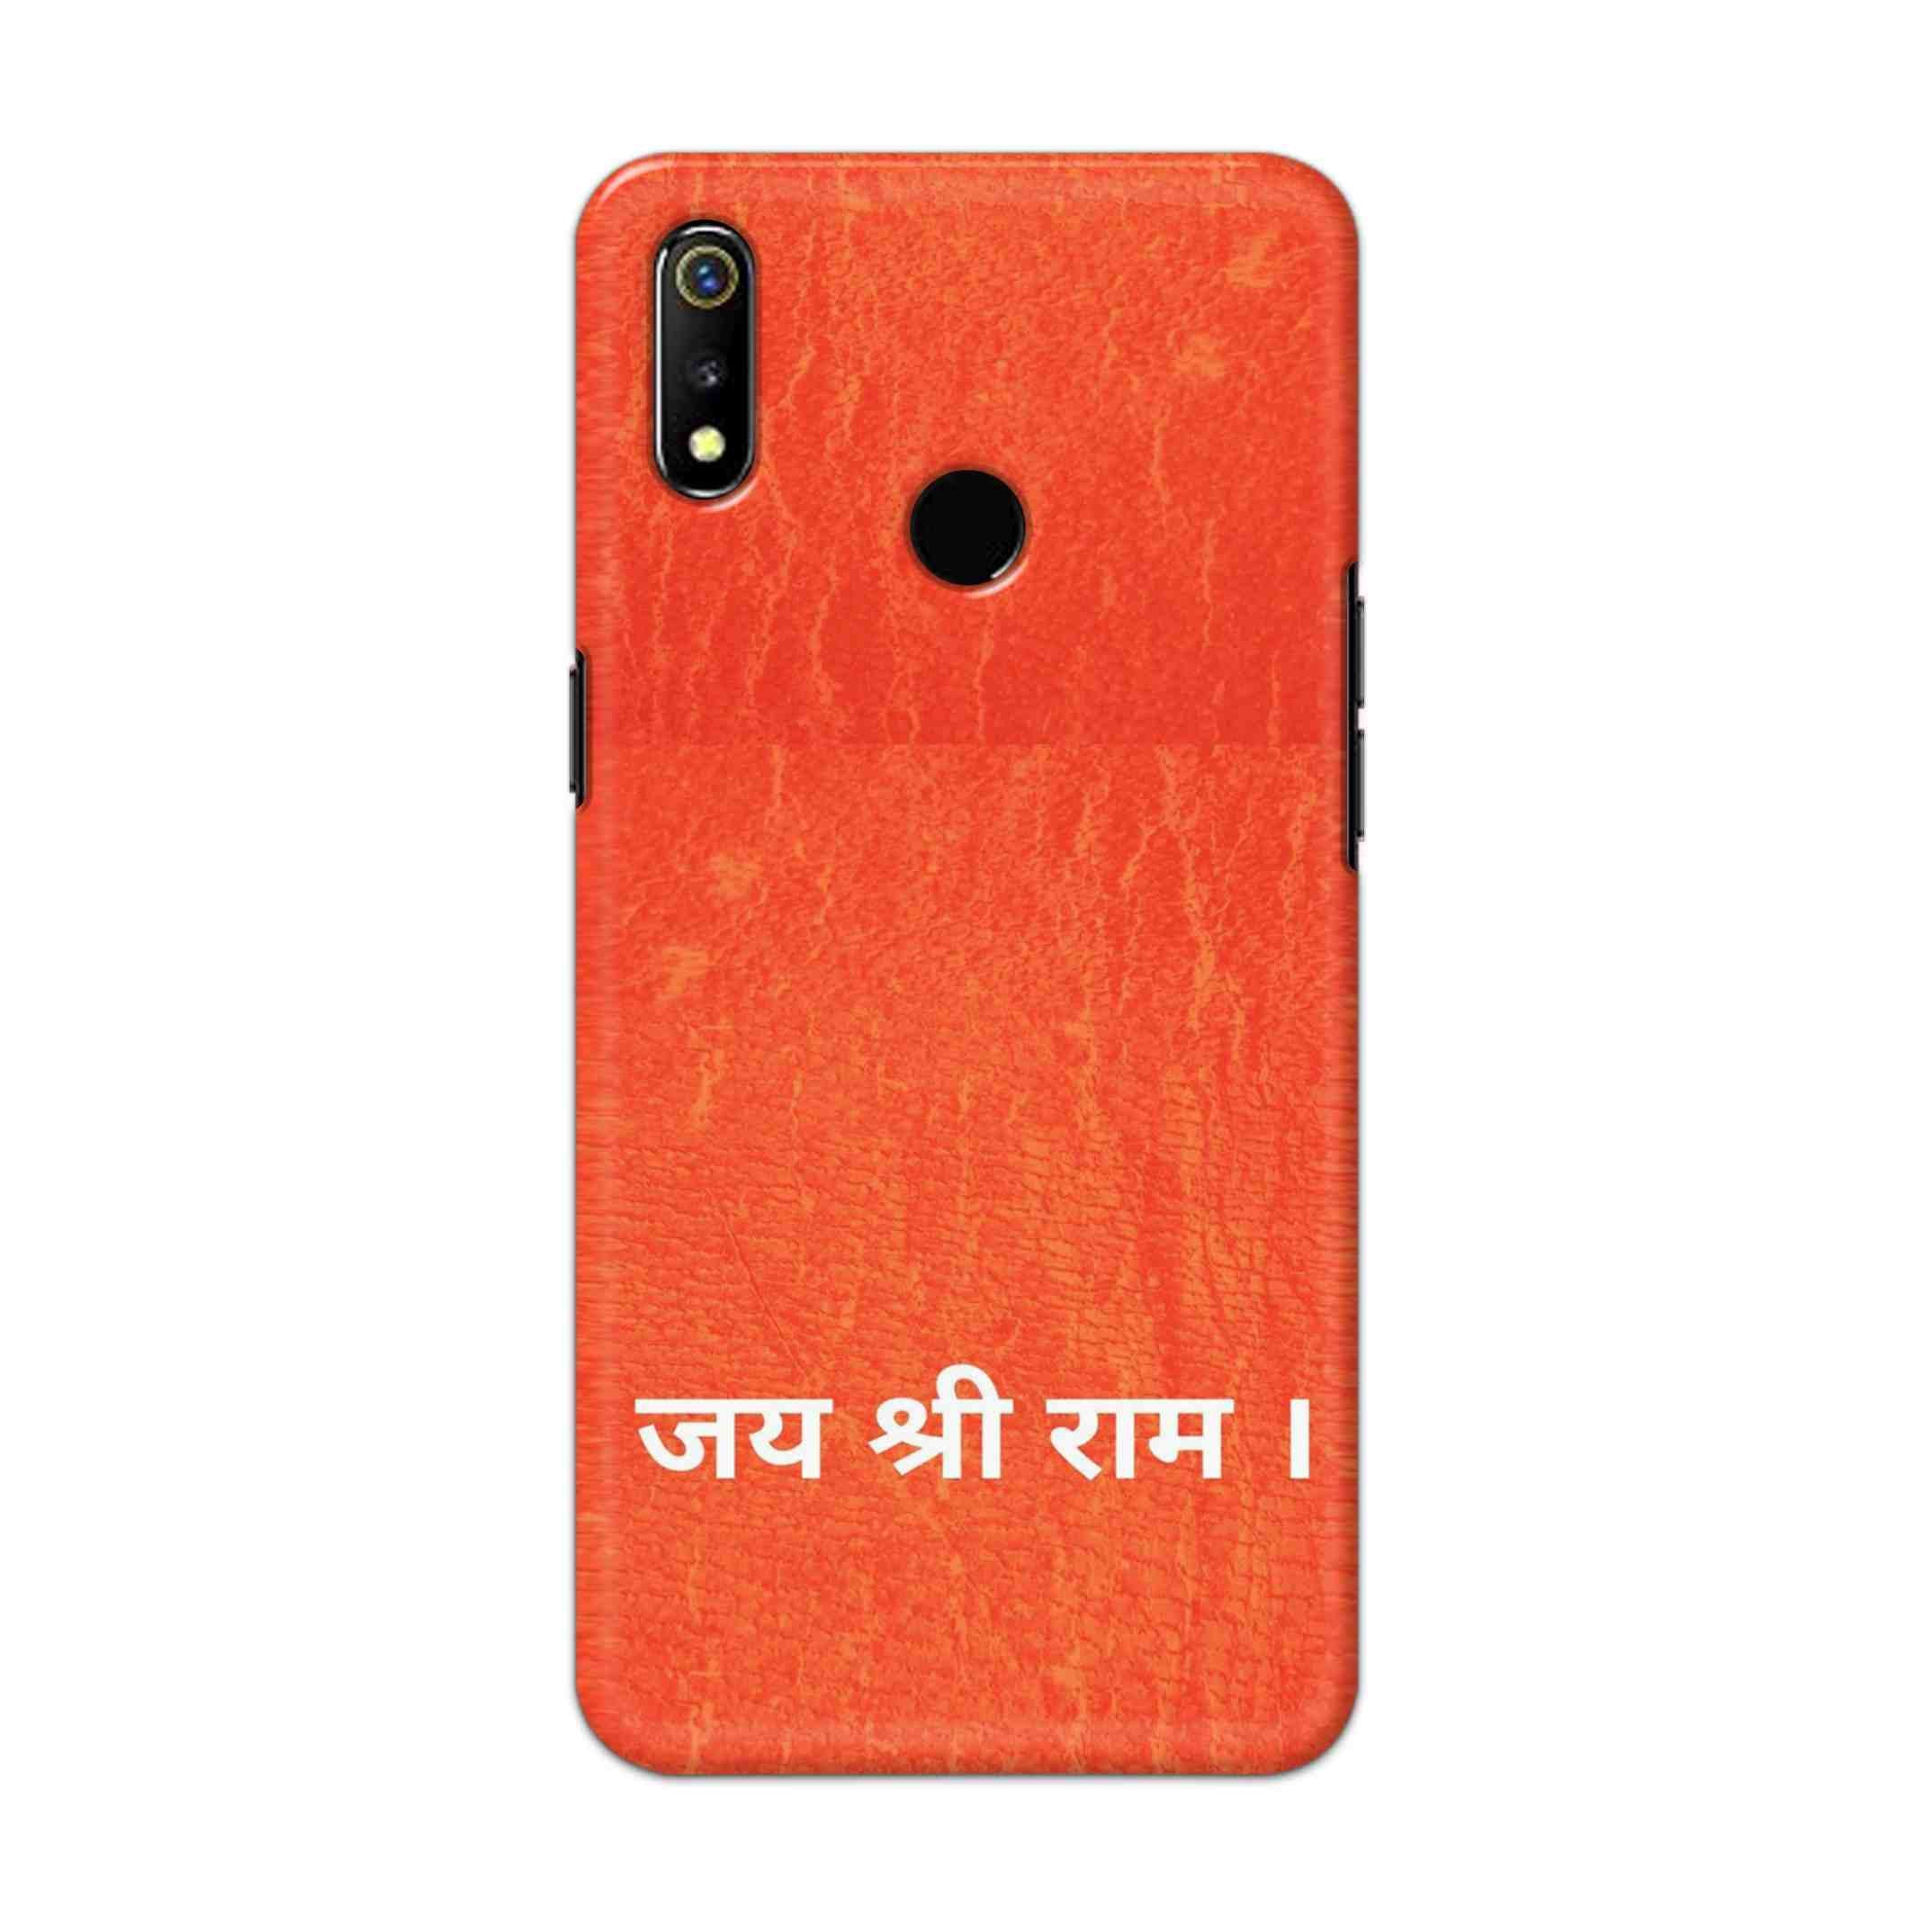 Buy Jai Shree Ram Hard Back Mobile Phone Case Cover For Oppo Realme 3 Online